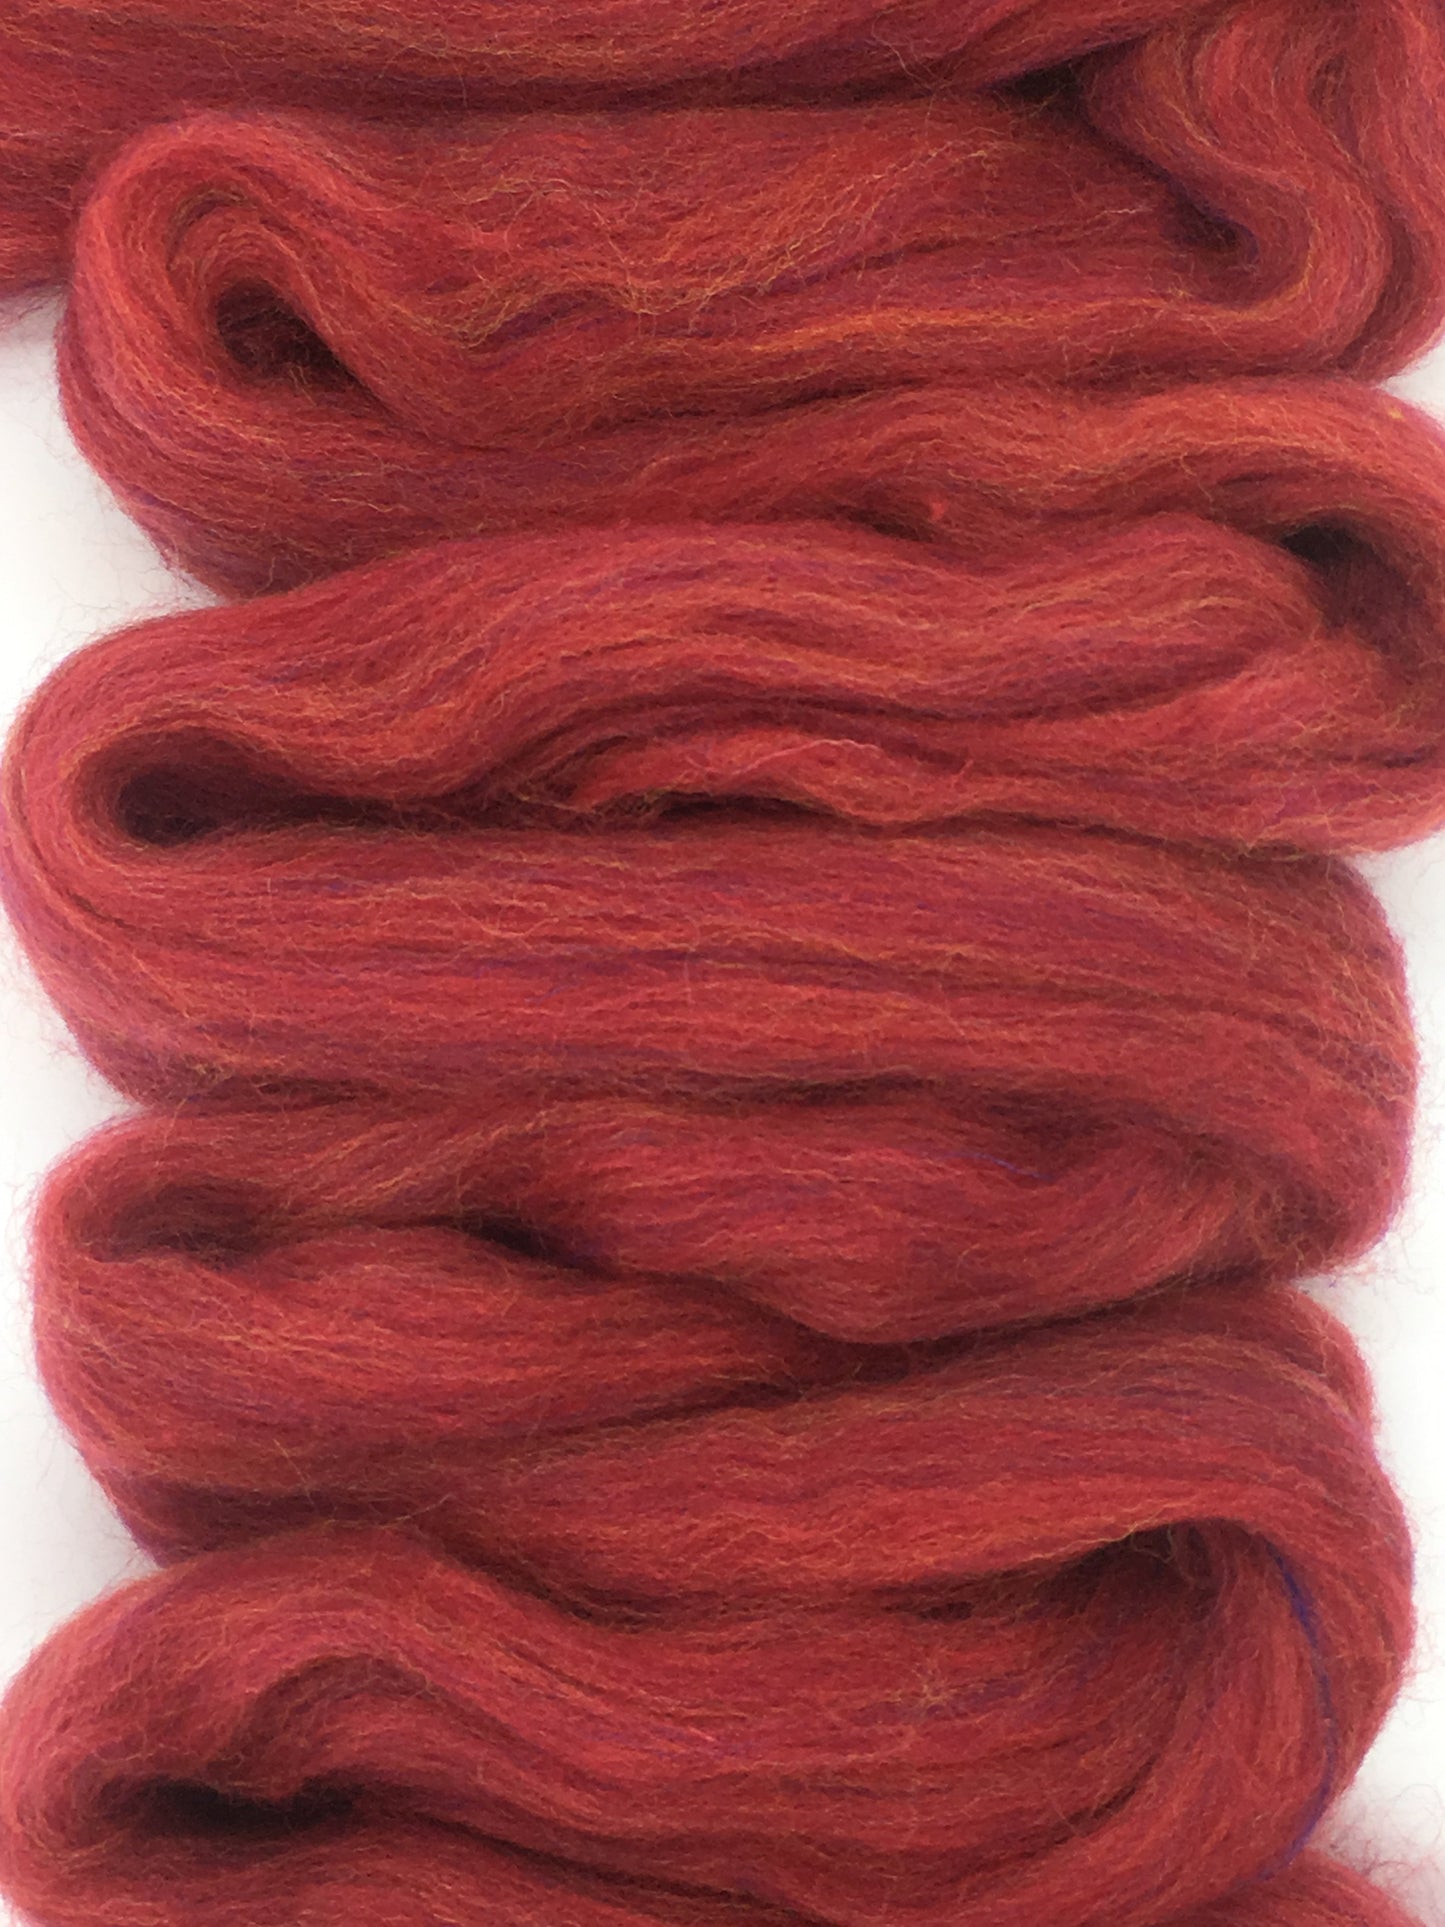 Luxurious Persian Red Merino Wool Roving